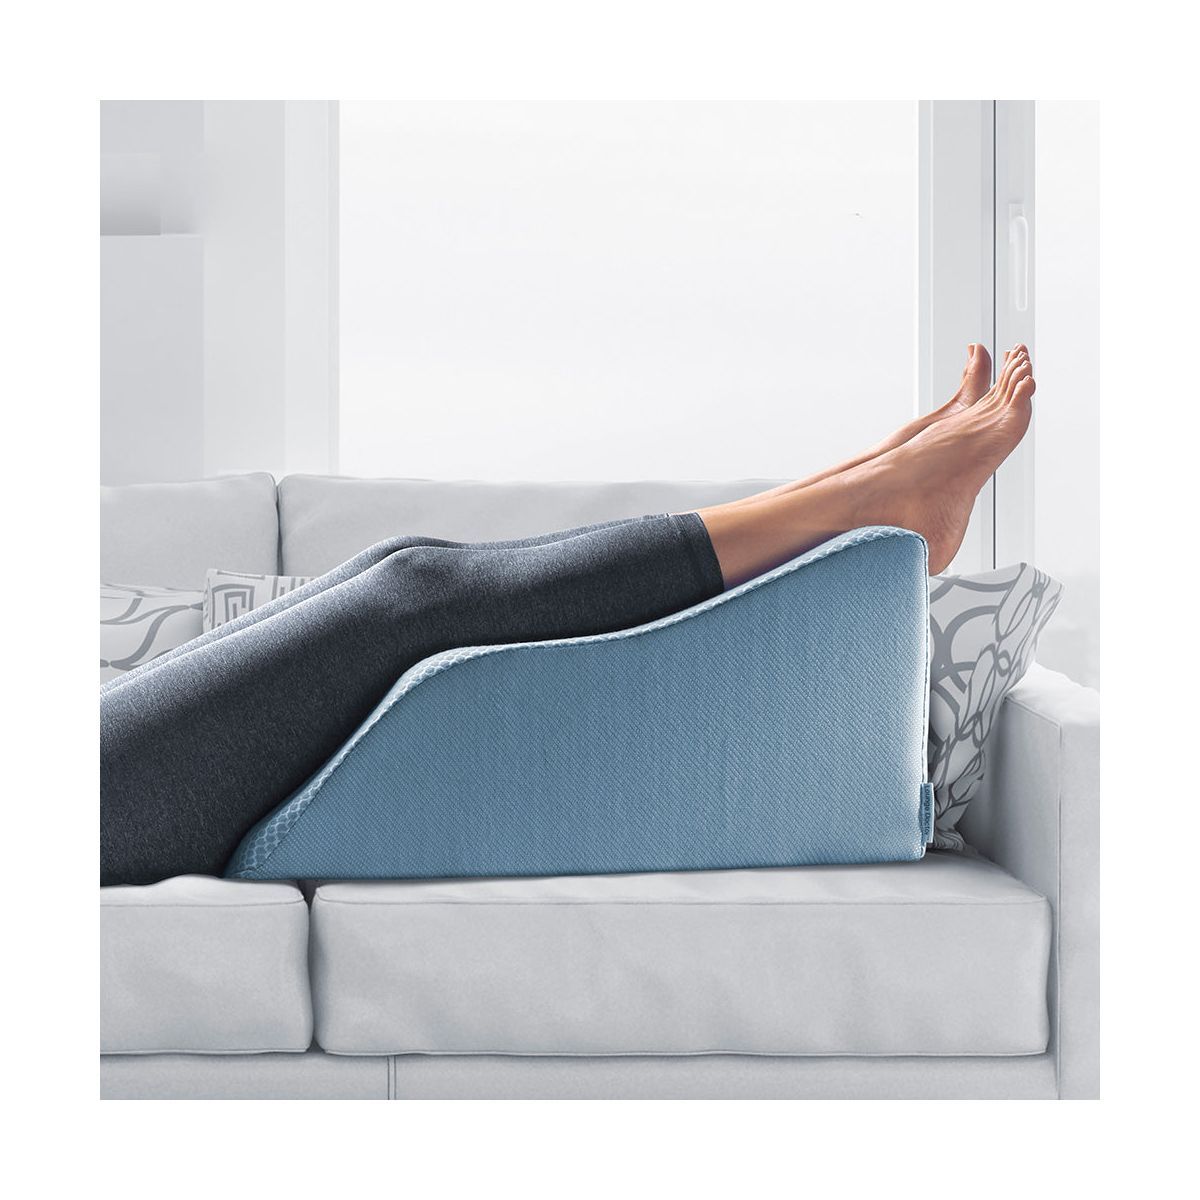 Lounge Doctor Leg Rest | Target